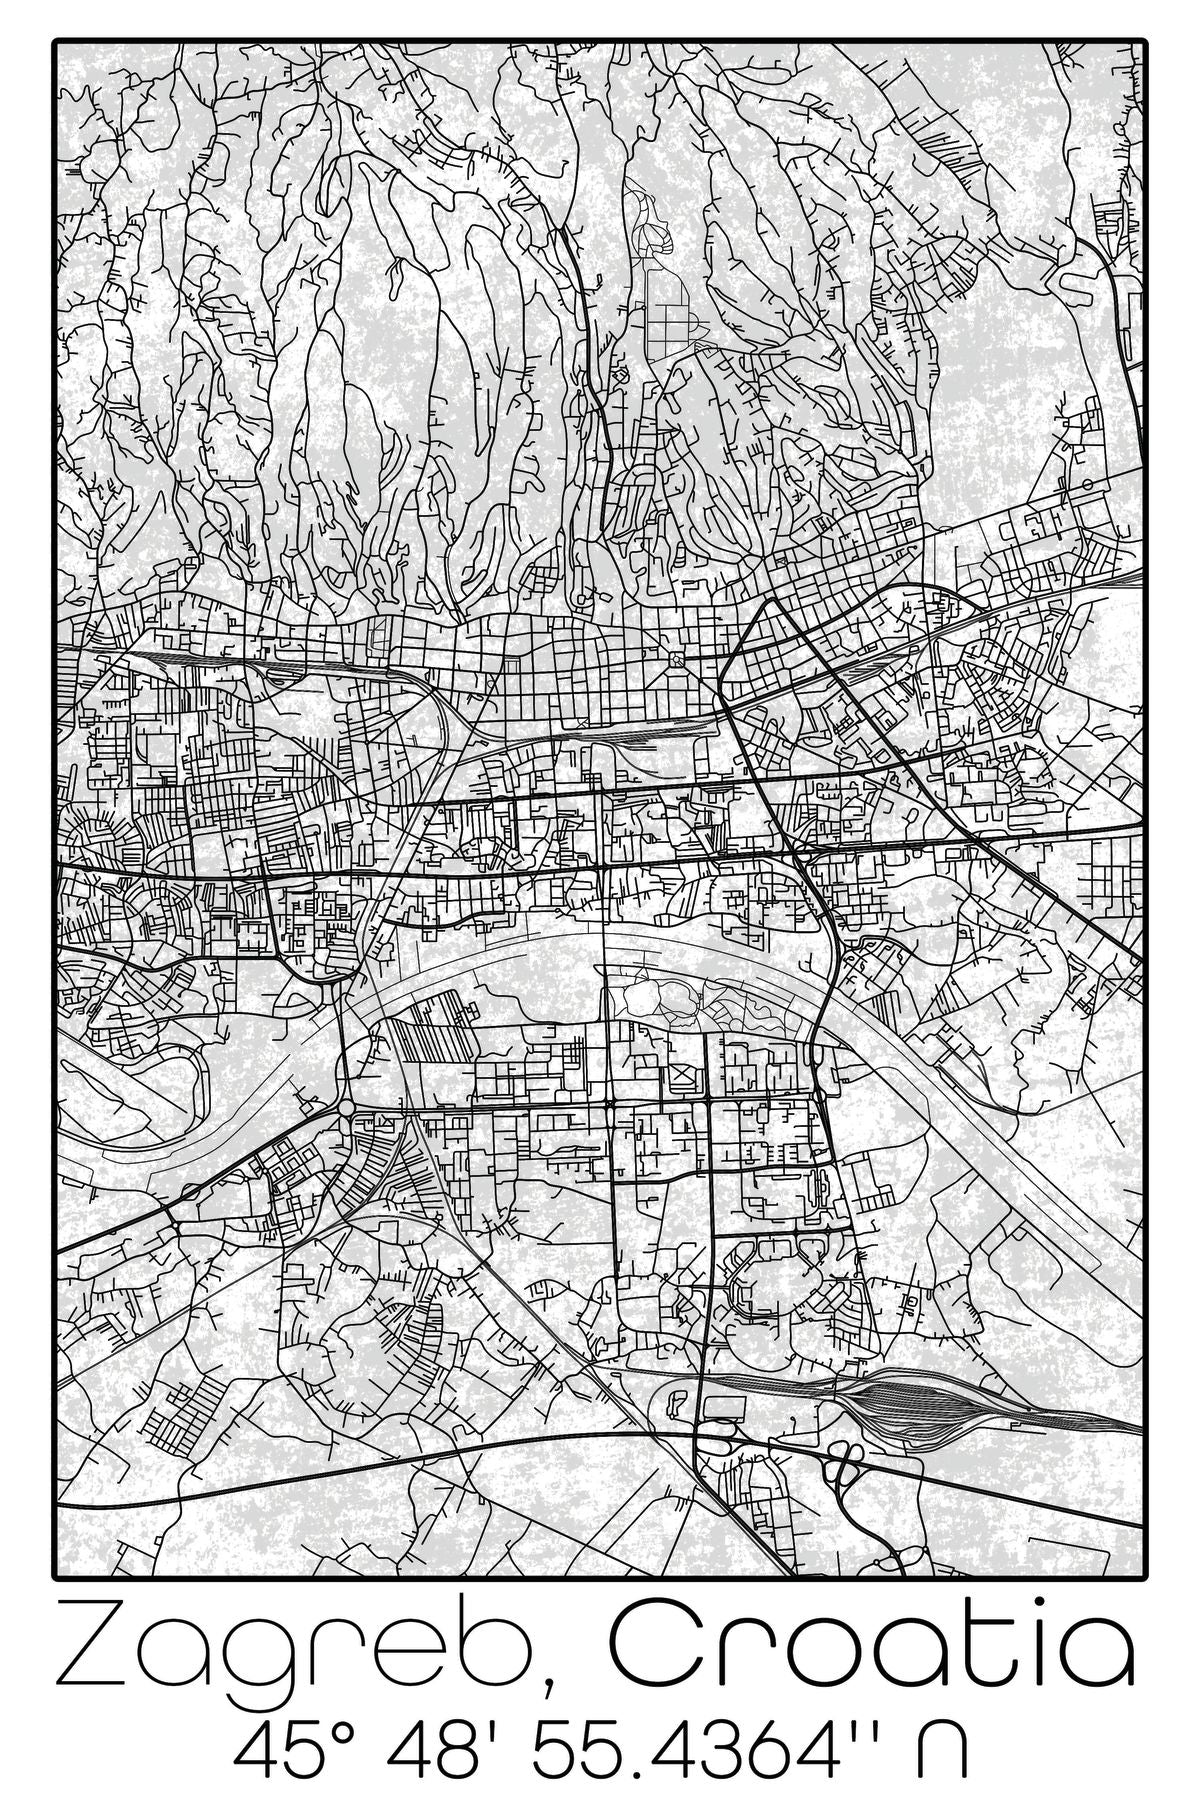 Zagreb City Map